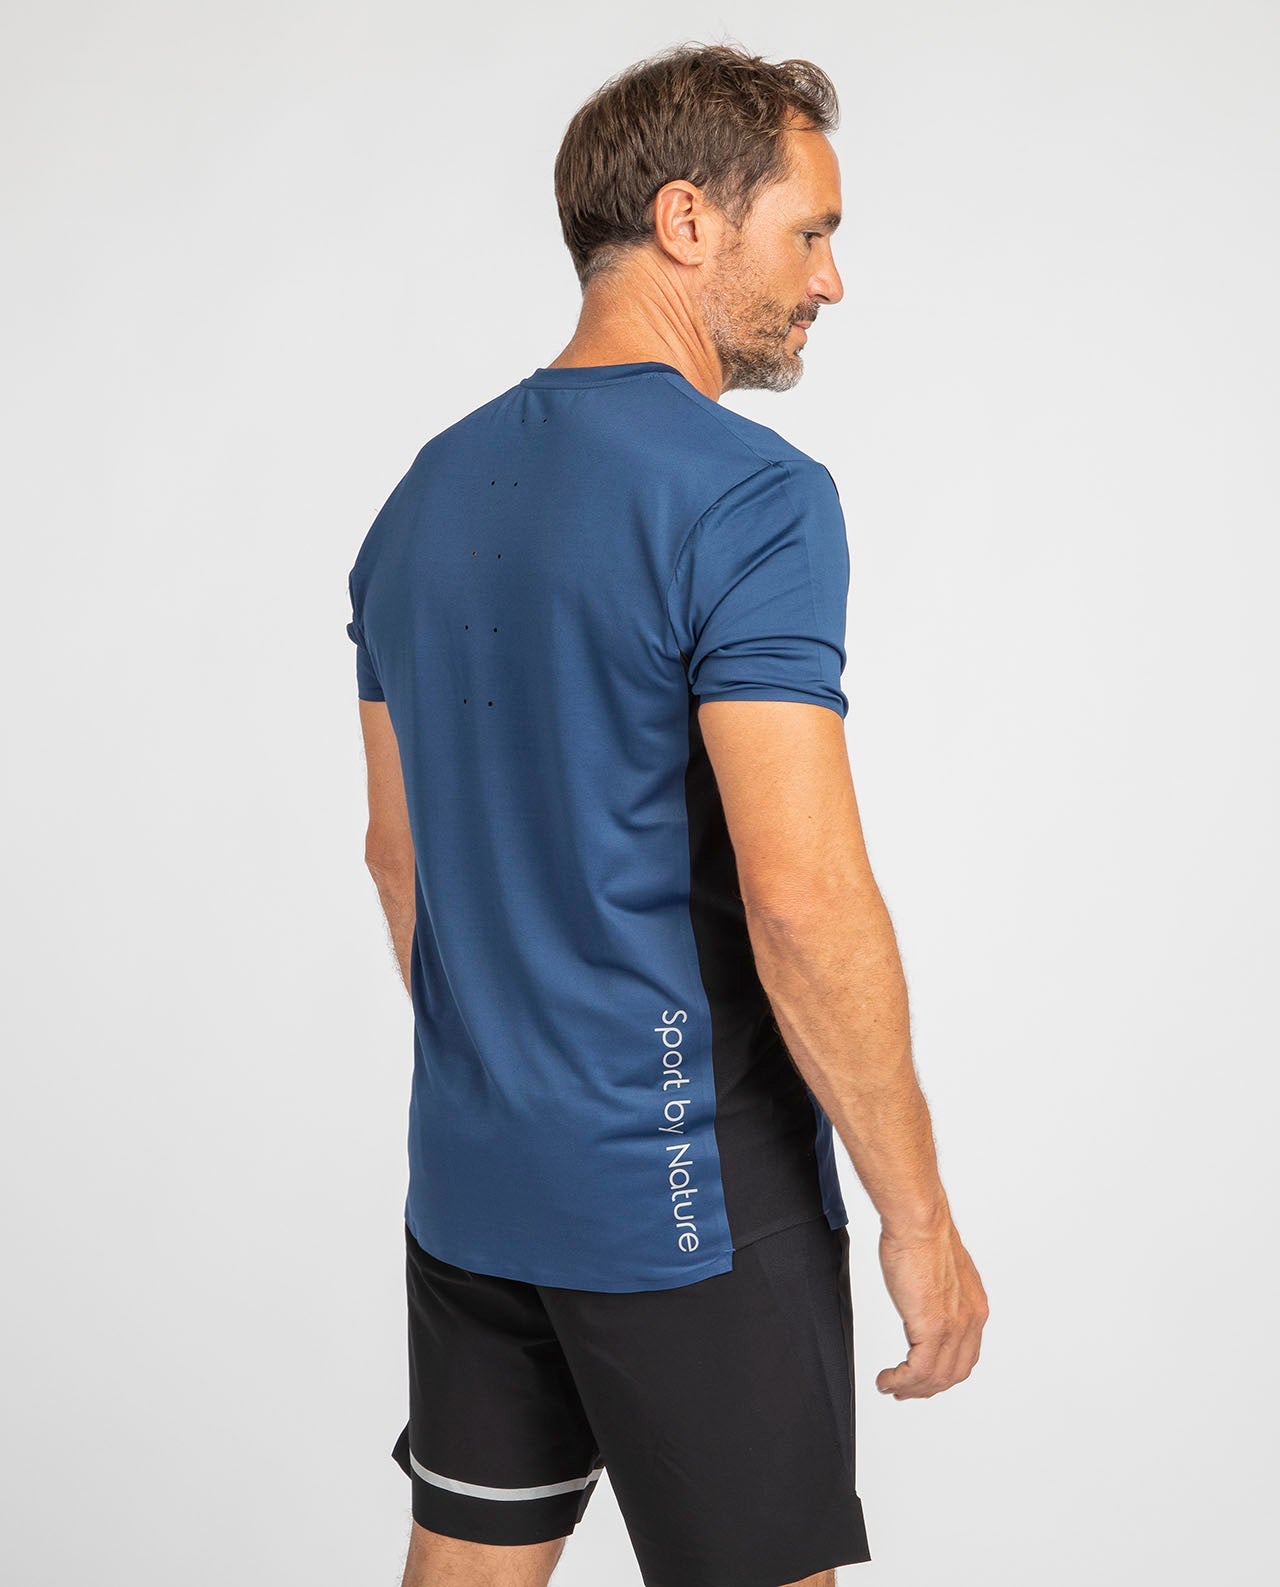 T-Shirt Sport Homme Éco-Responsable Respirant Recyclé Bleu Nosc – Marché  Commun